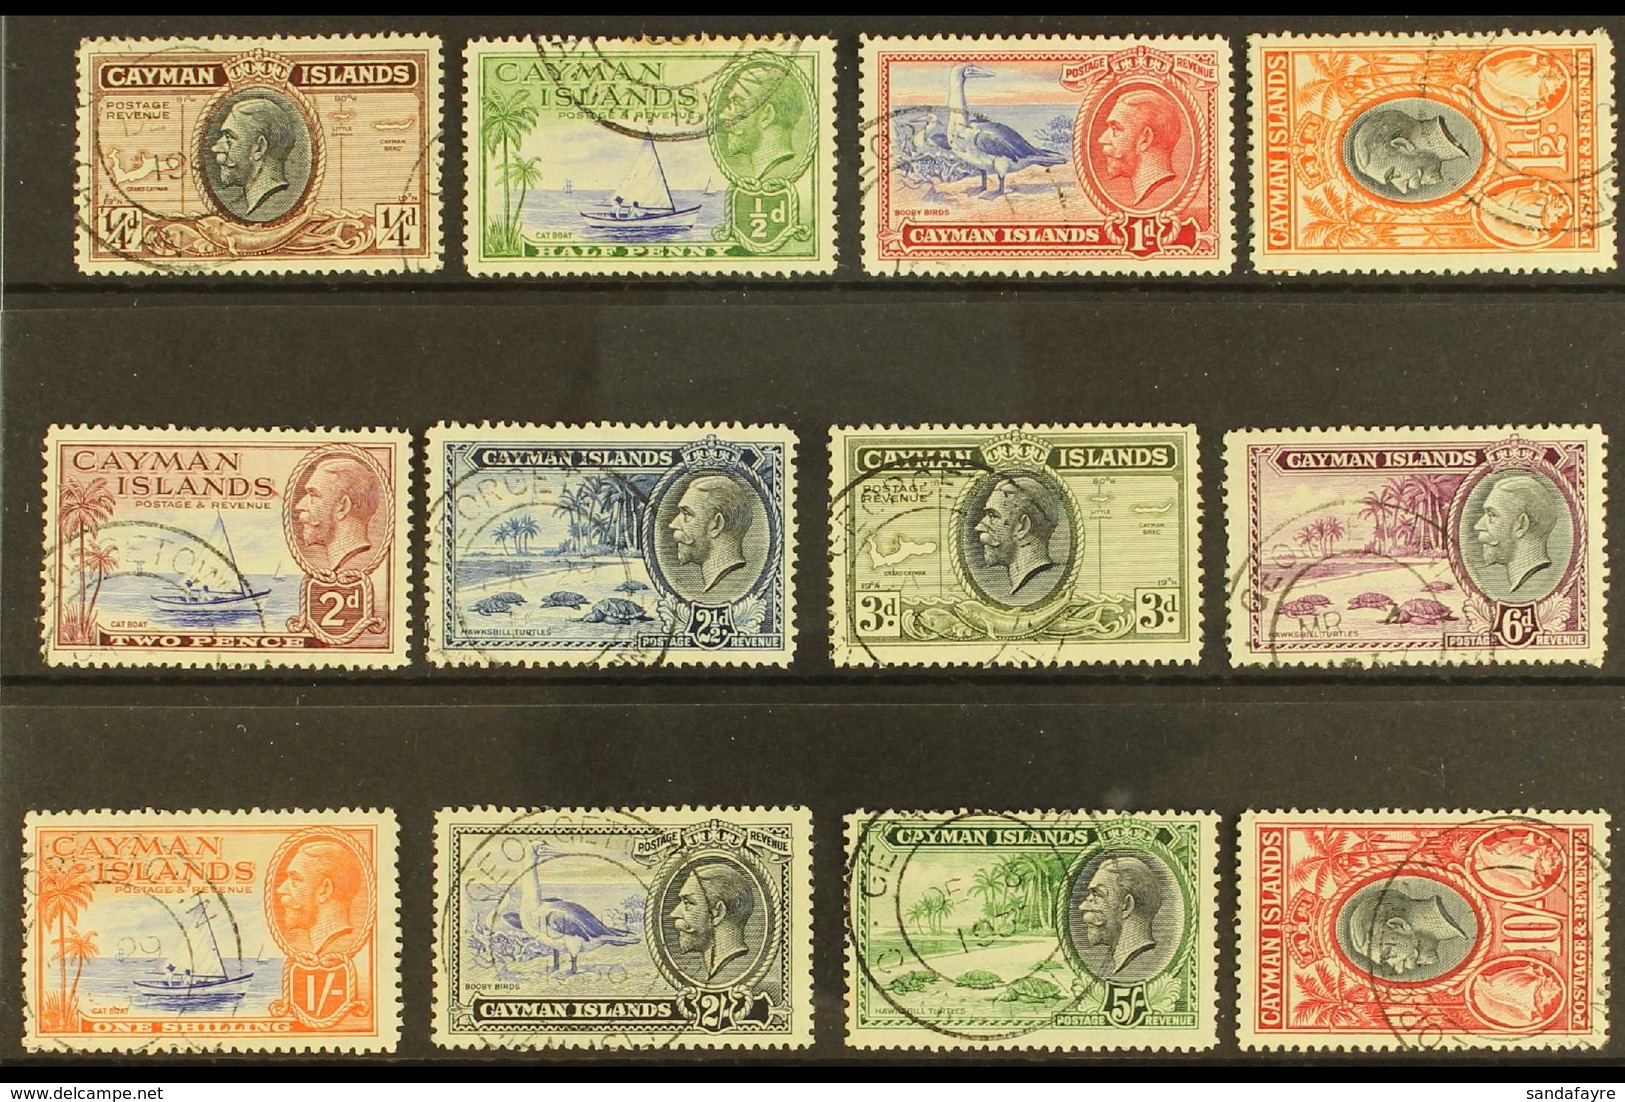 1935 Pictorial Definitive Set, SG 96/107, Fine Cds Used (12 Stamps) For More Images, Please Visit Http://www.sandafayre. - Kaaiman Eilanden